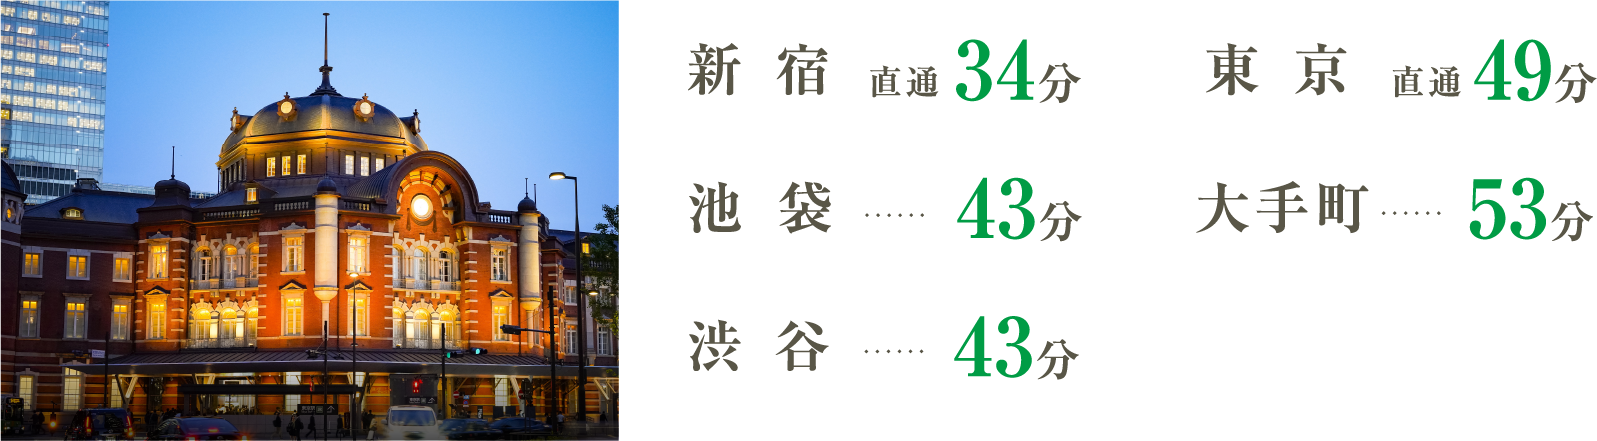 新宿直通34分、東京直通49分、池袋43分、大手町53分、渋谷43分